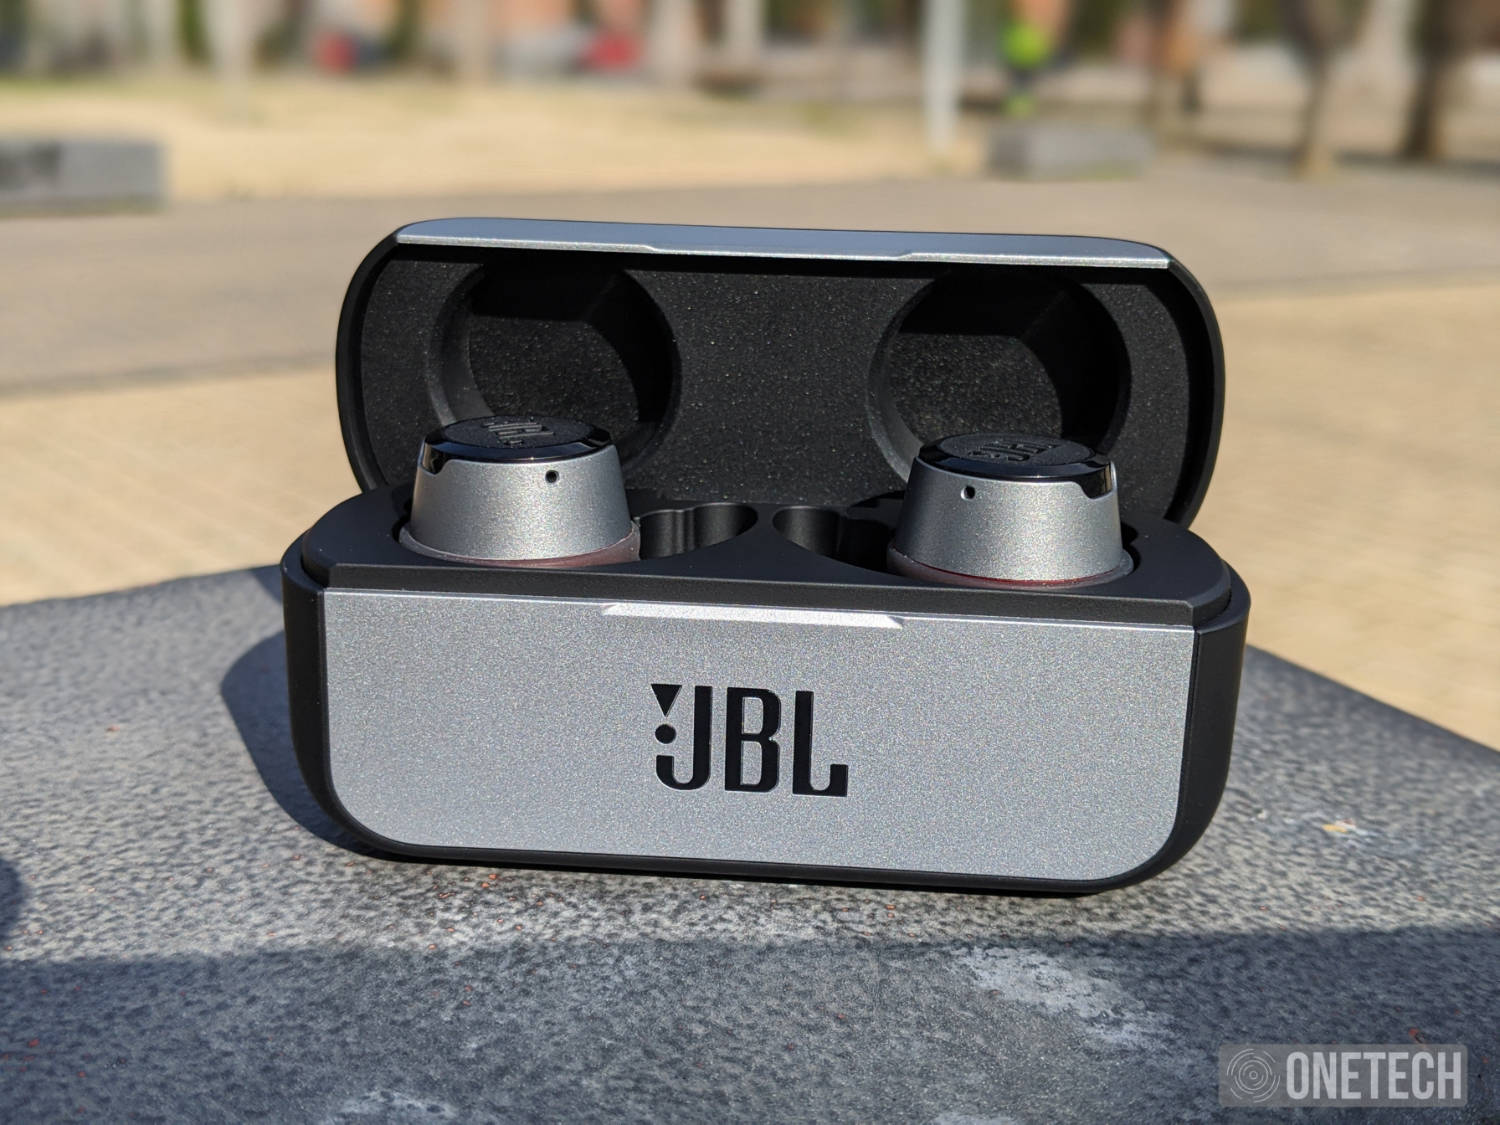 Los nuevos auriculares JBL Reflect Flow PRO llegan a España, Gadgets